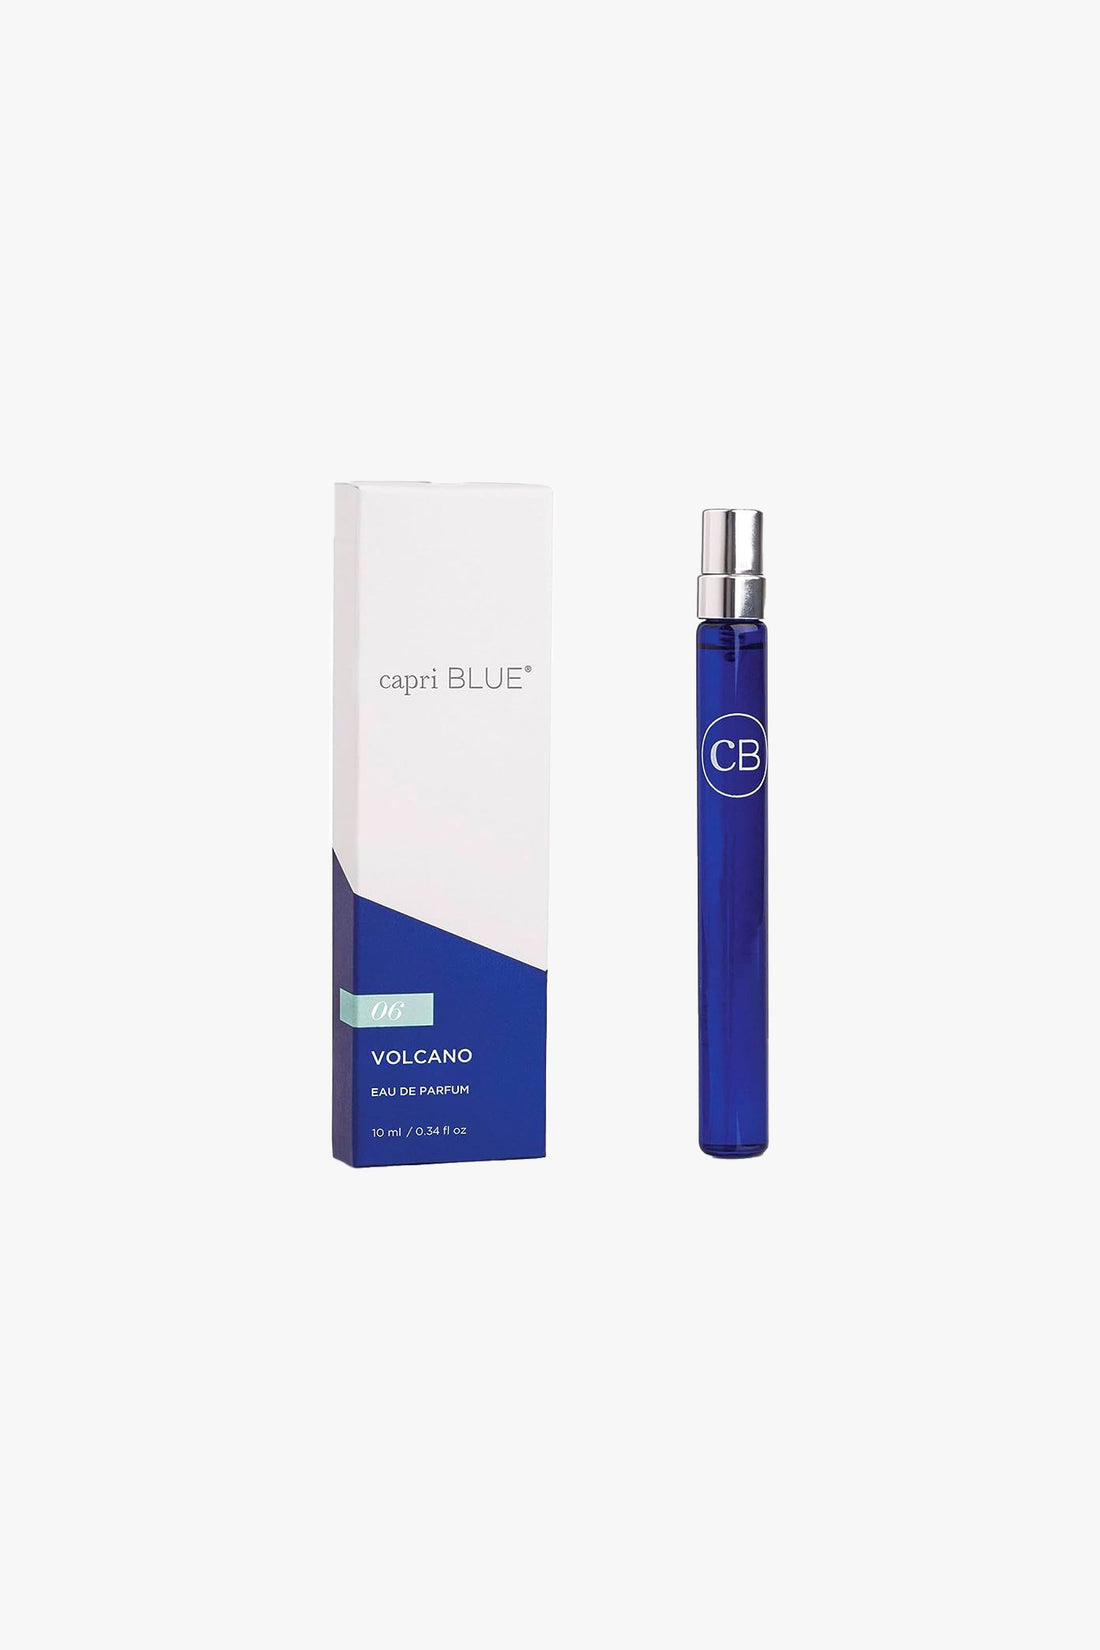 Capri Blue Volcano Eau de Parfum Spray Pen